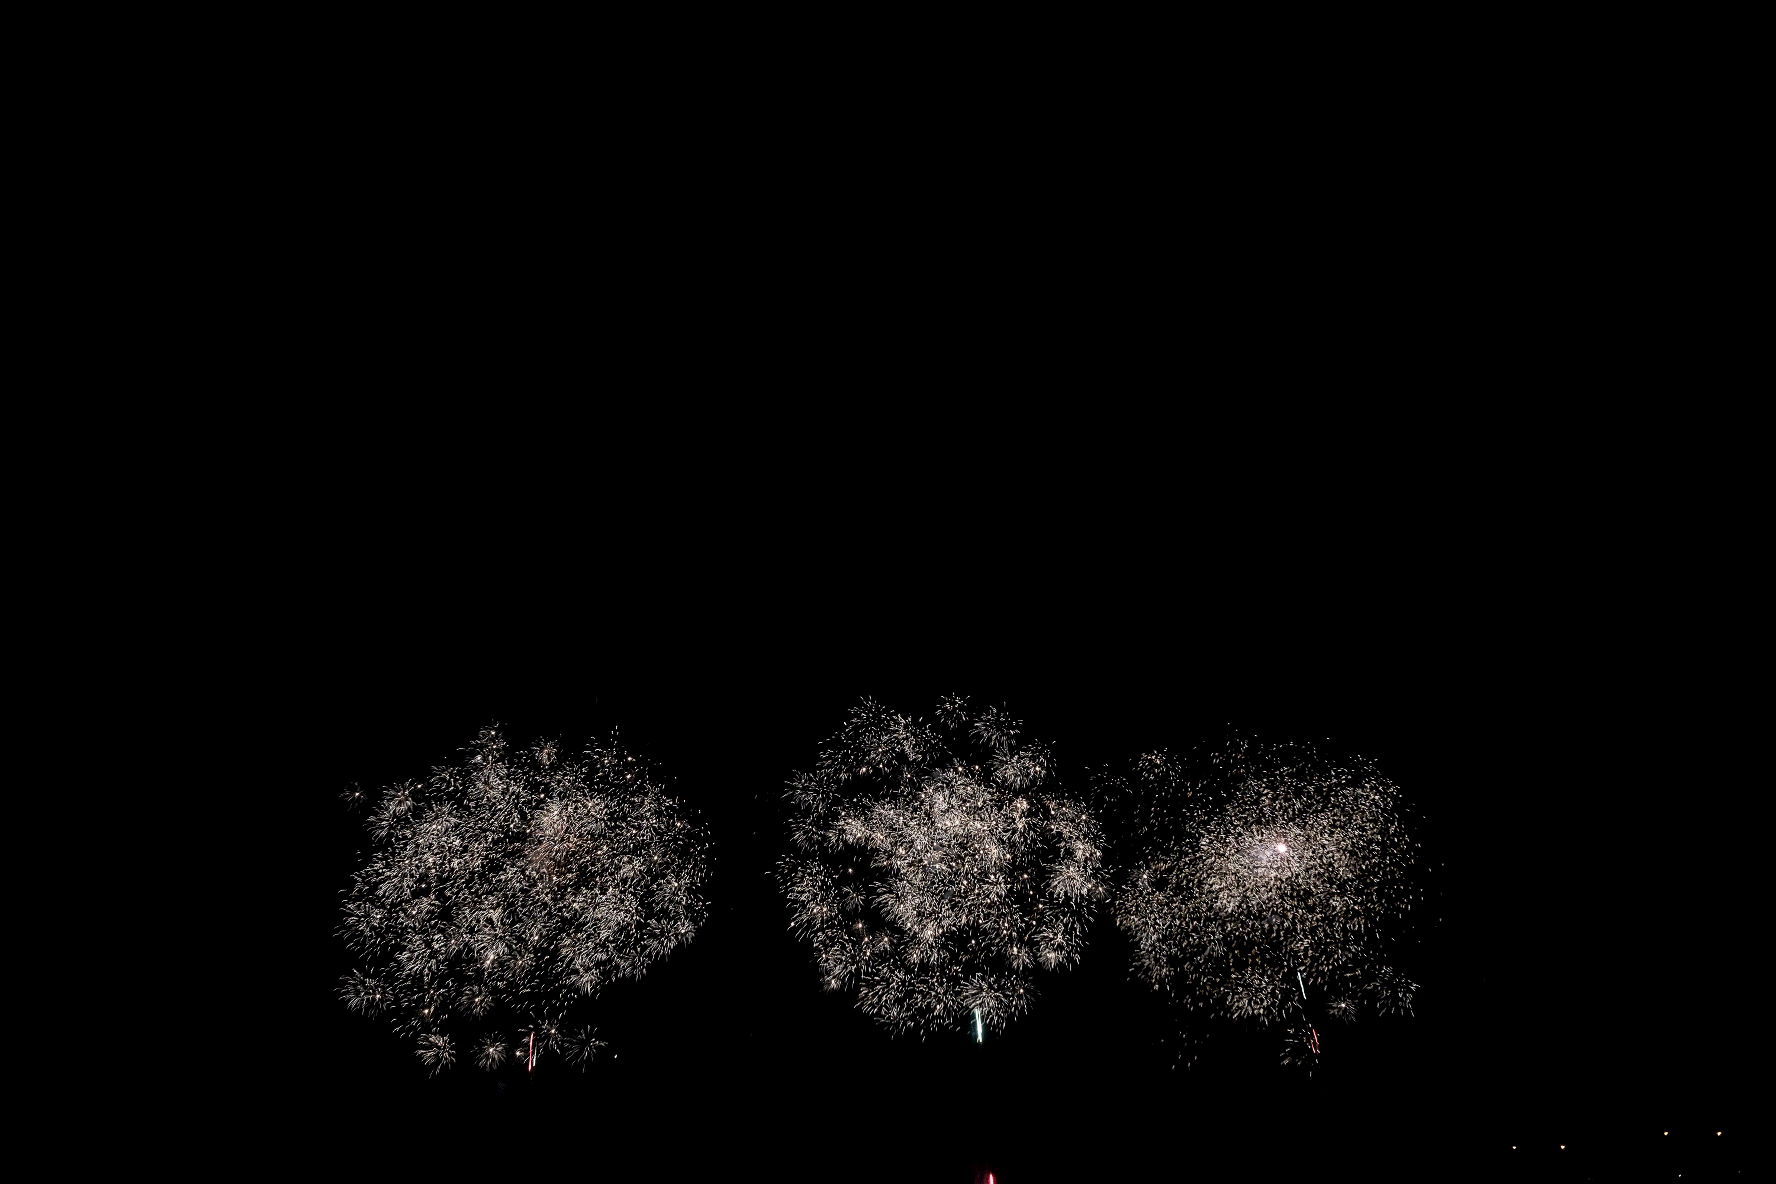 イーハトーブから夏の終わりを。FUJIFILM xe-3での花火撮影【作例】